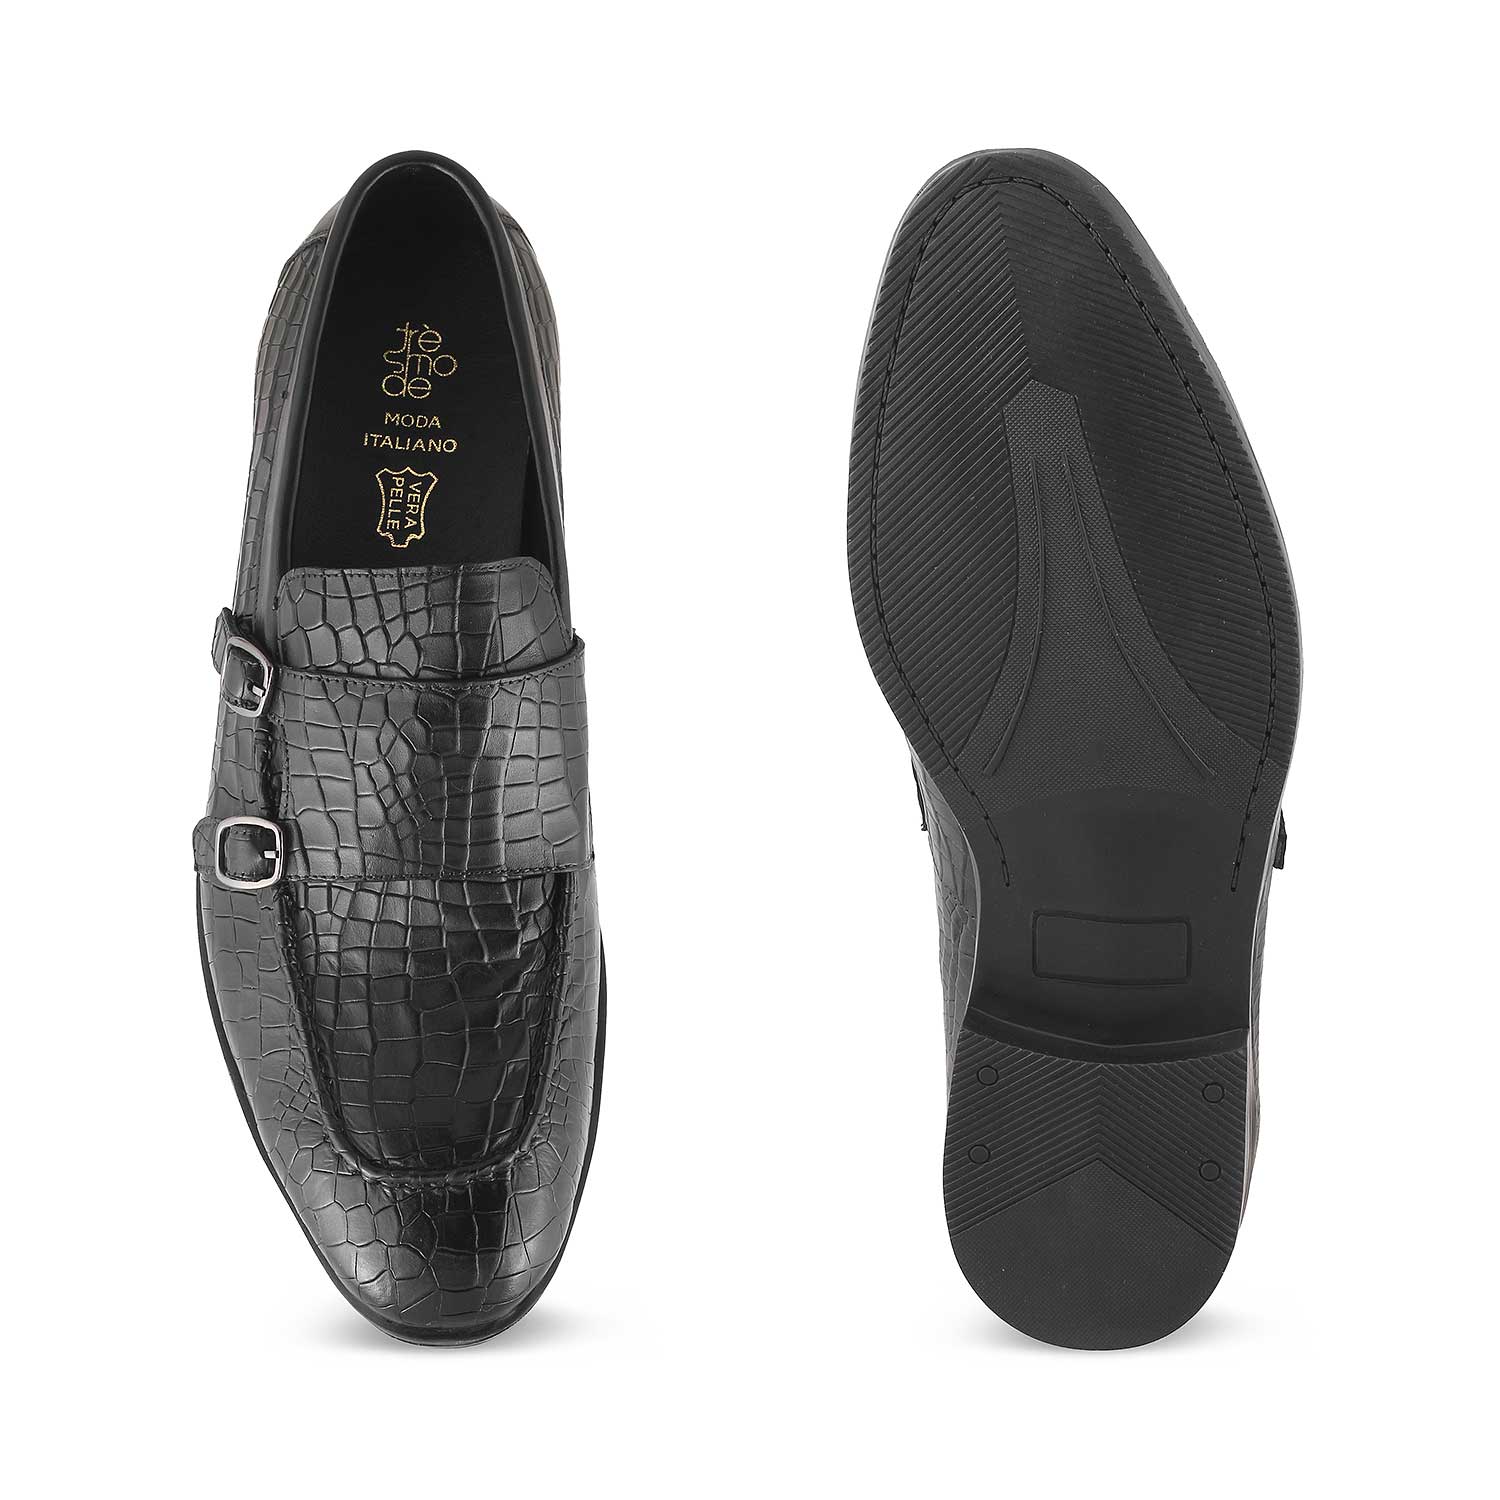 Cliz Black Men's Double Monk Shoes Online at Tresmode.com